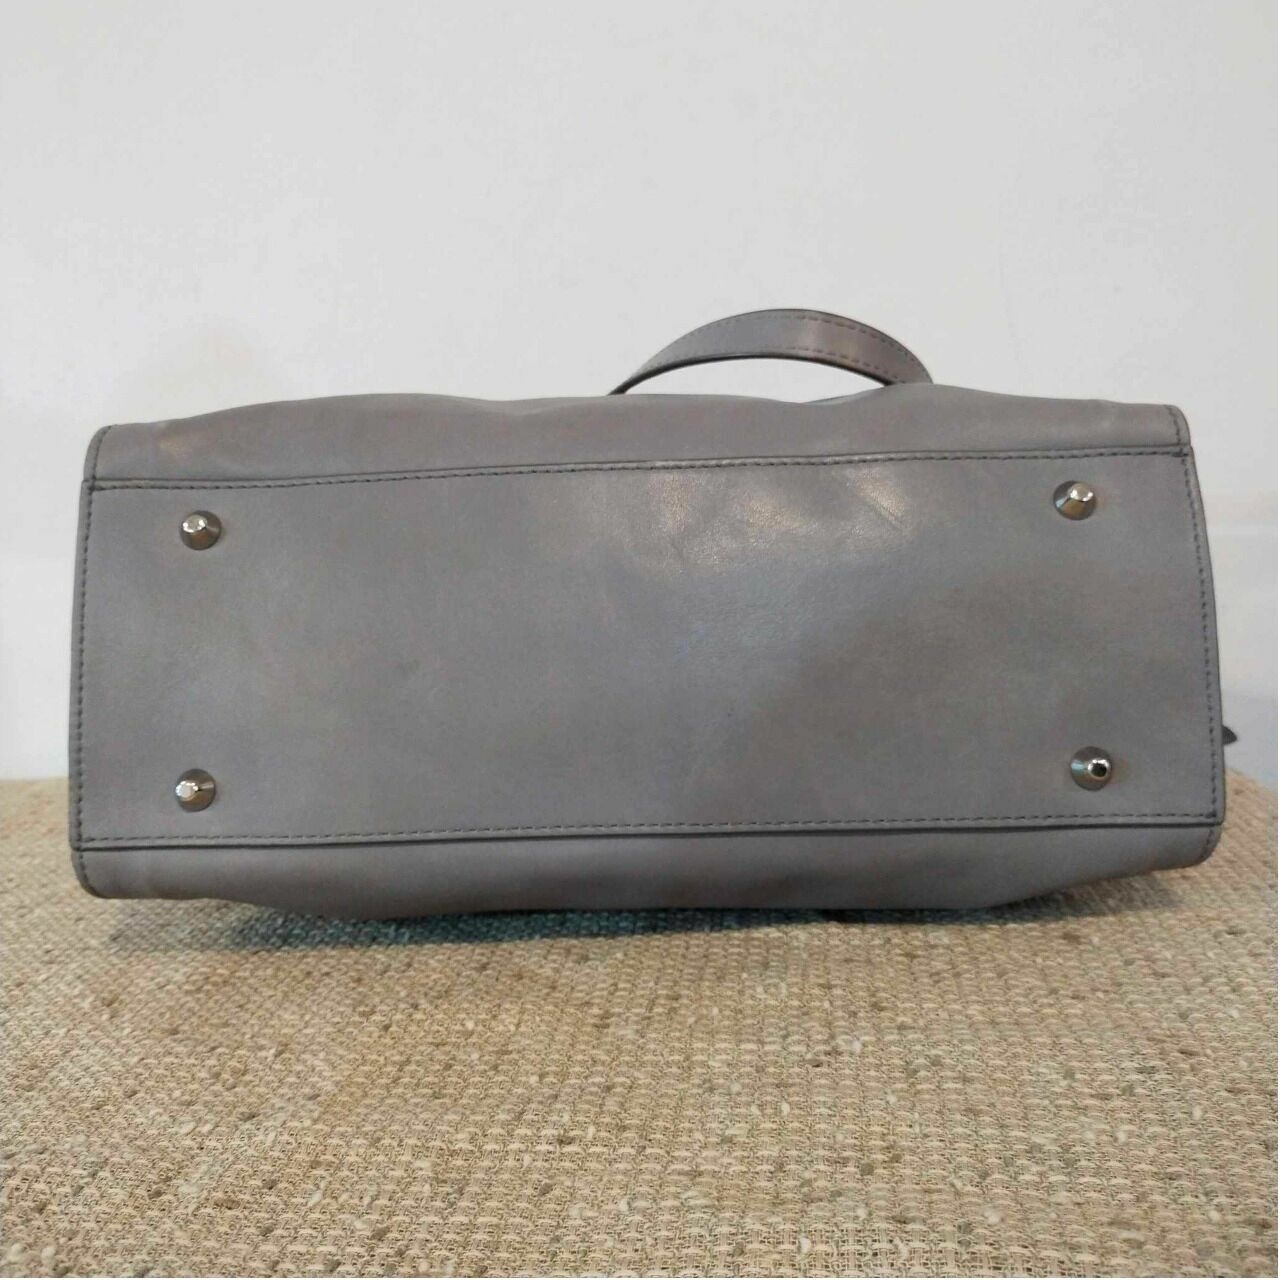 Rabeanco Grey Shoulder Bag